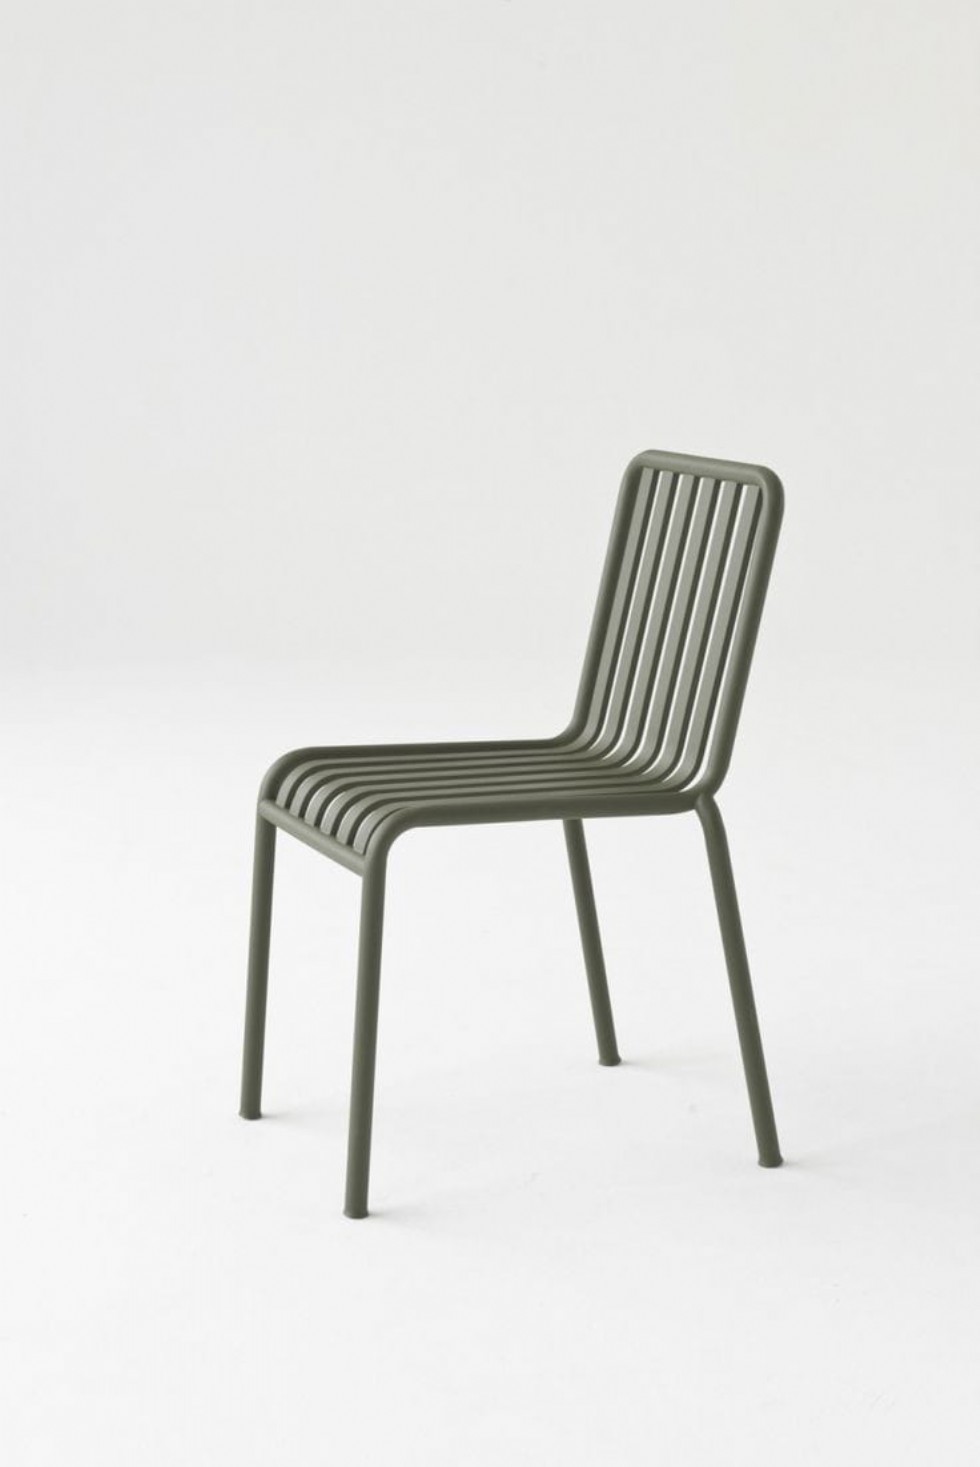 Kodu: 18991 - Demir Sandalye Kolçaksız Mindersiz Yeşil Renk Metal Sandalye